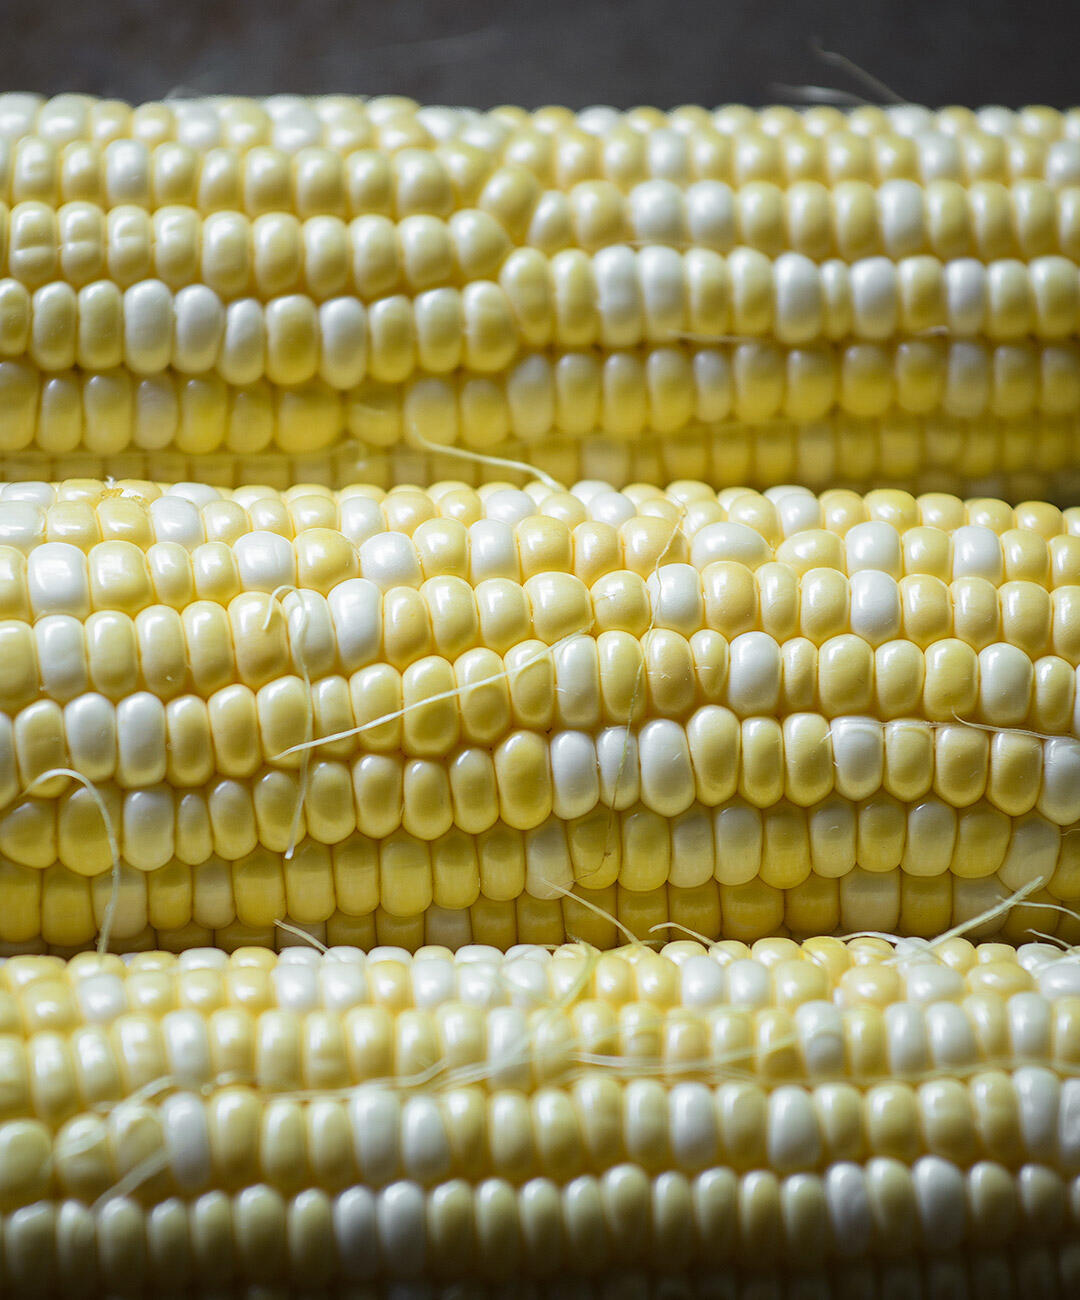 Corn from Jimenez Family Farm found at the Santa Monica Farmers Market.